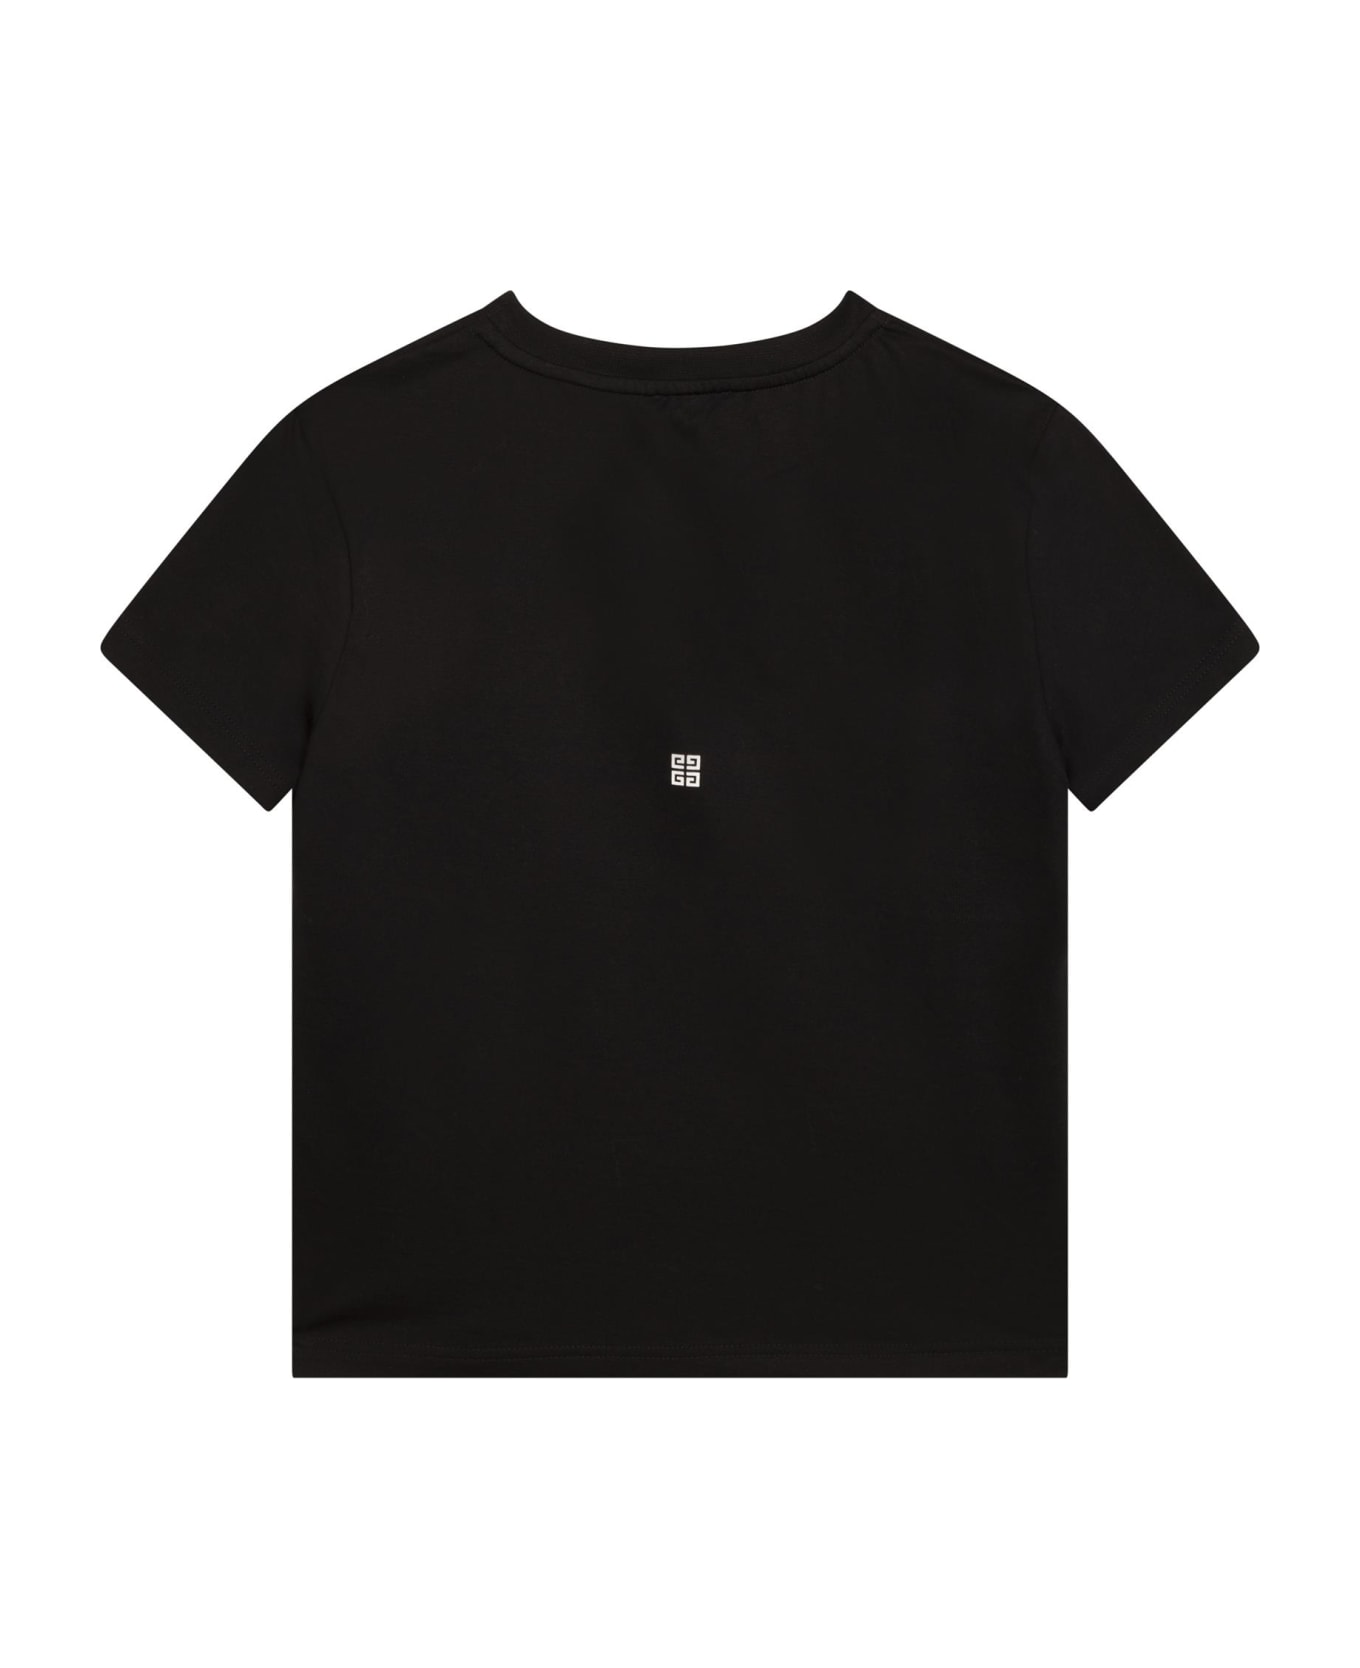 Givenchy Printed T-shirt - Black